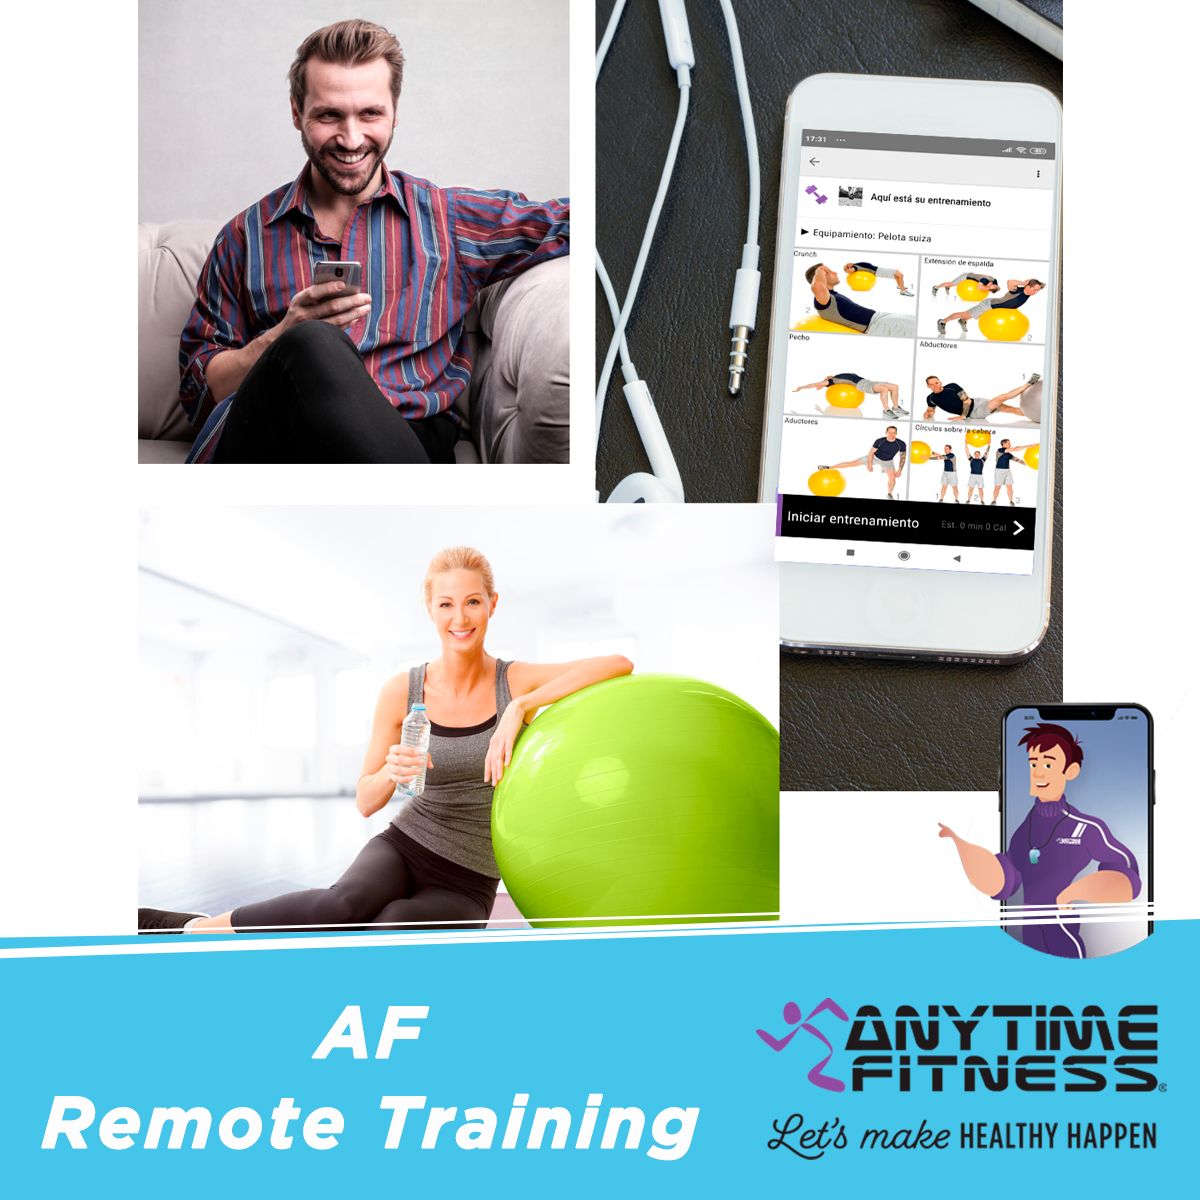 La cadena de gimnasios Anytime Fitness lanza el sistema Remote Training a través de su aplicación